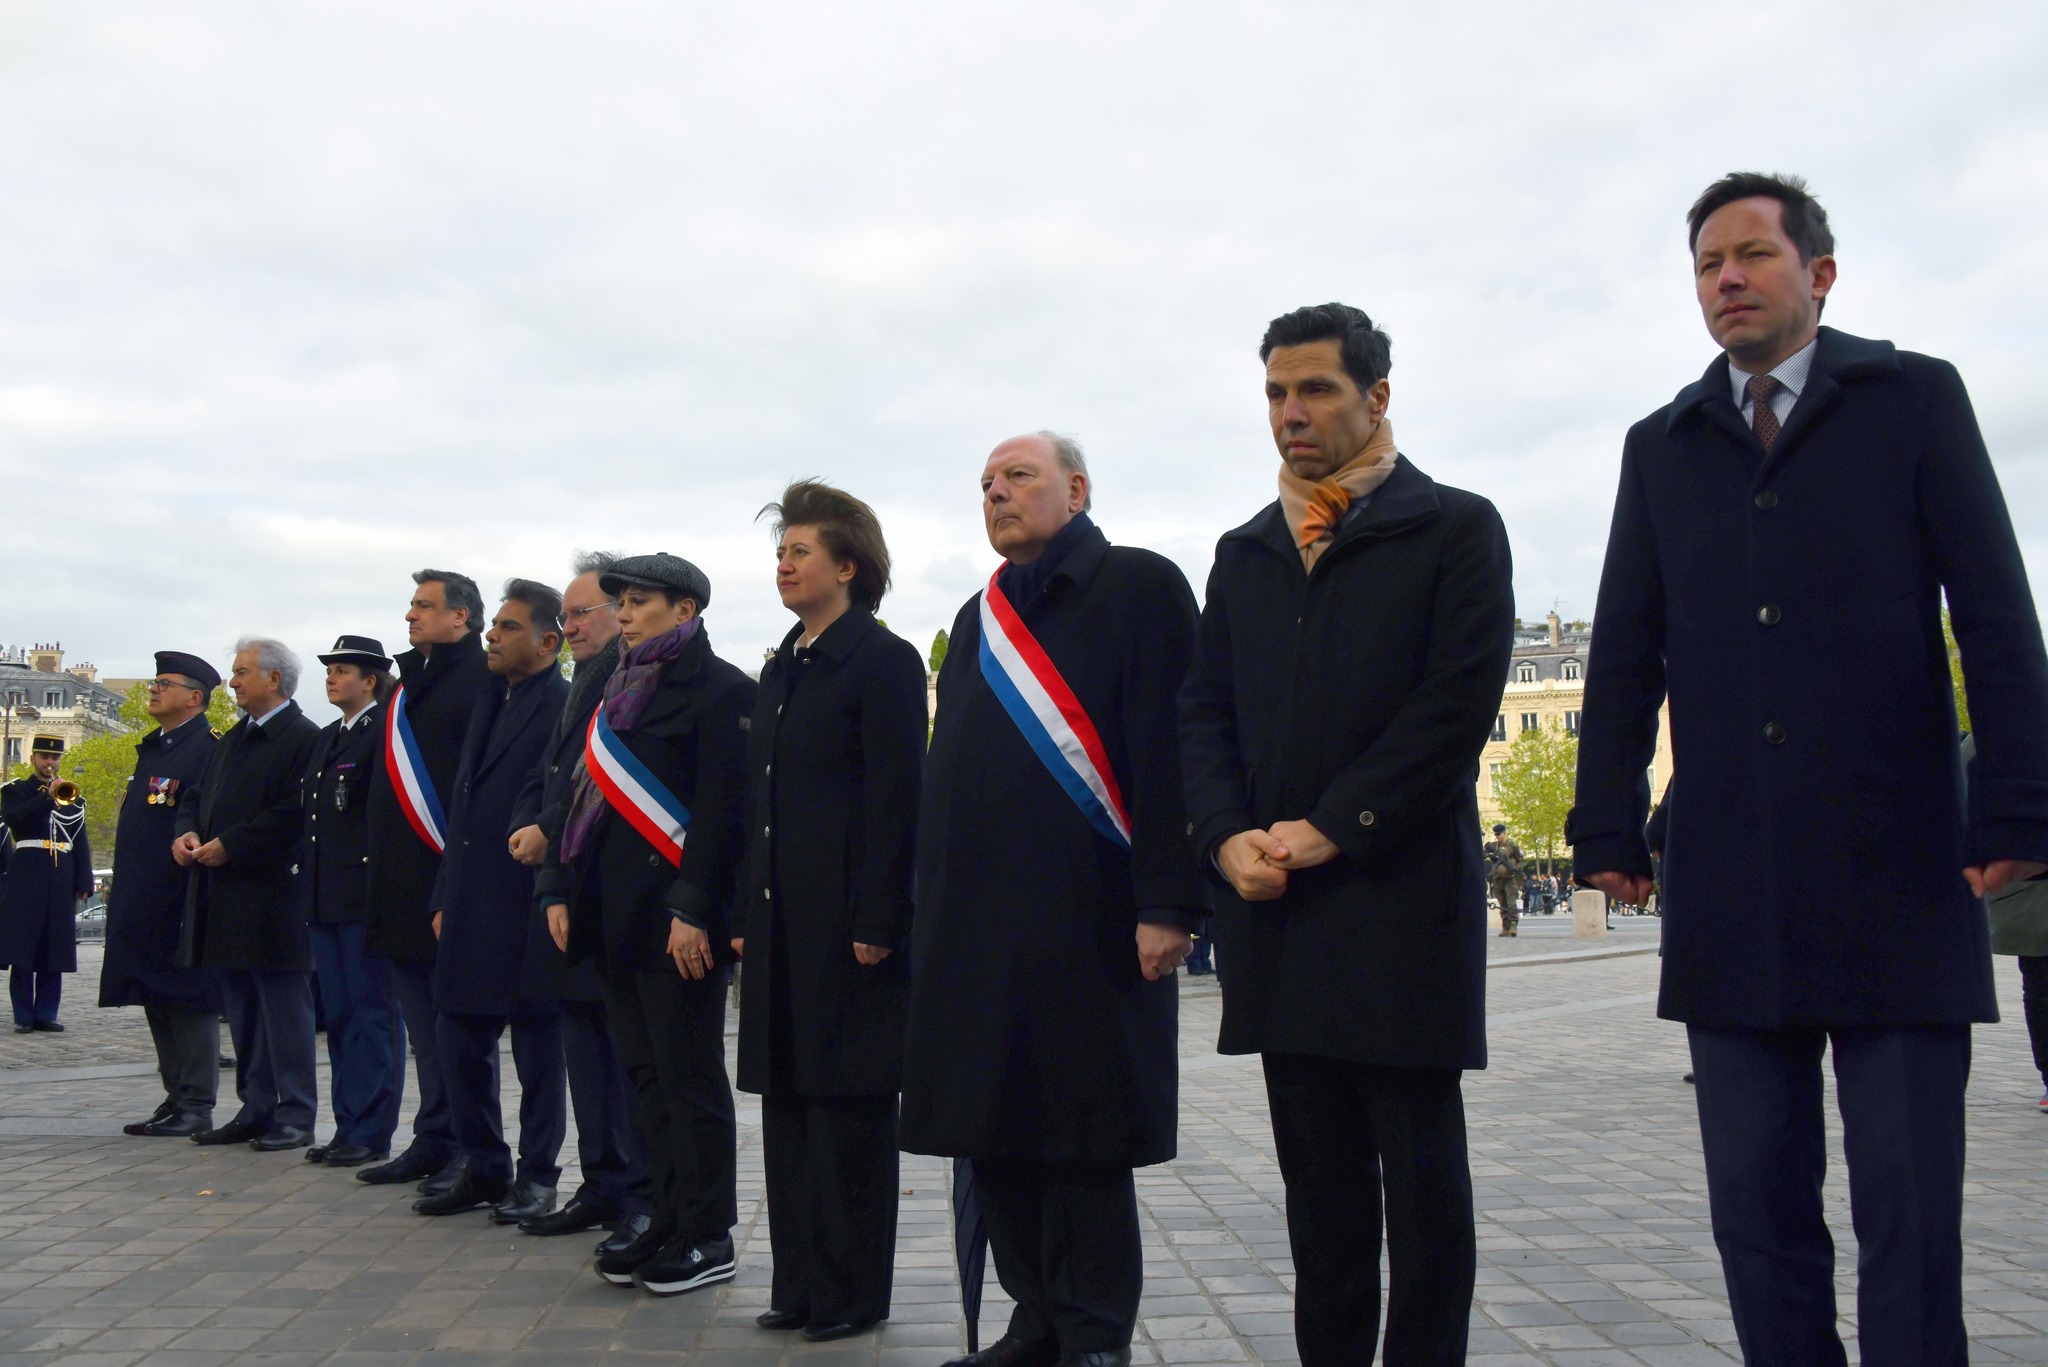 Փարիզի Հաղթական կամարի հավերժական կրակի թեժացման արարողություն՝ ի հիշատակ Հայոց ցեղասպանության զոհերի